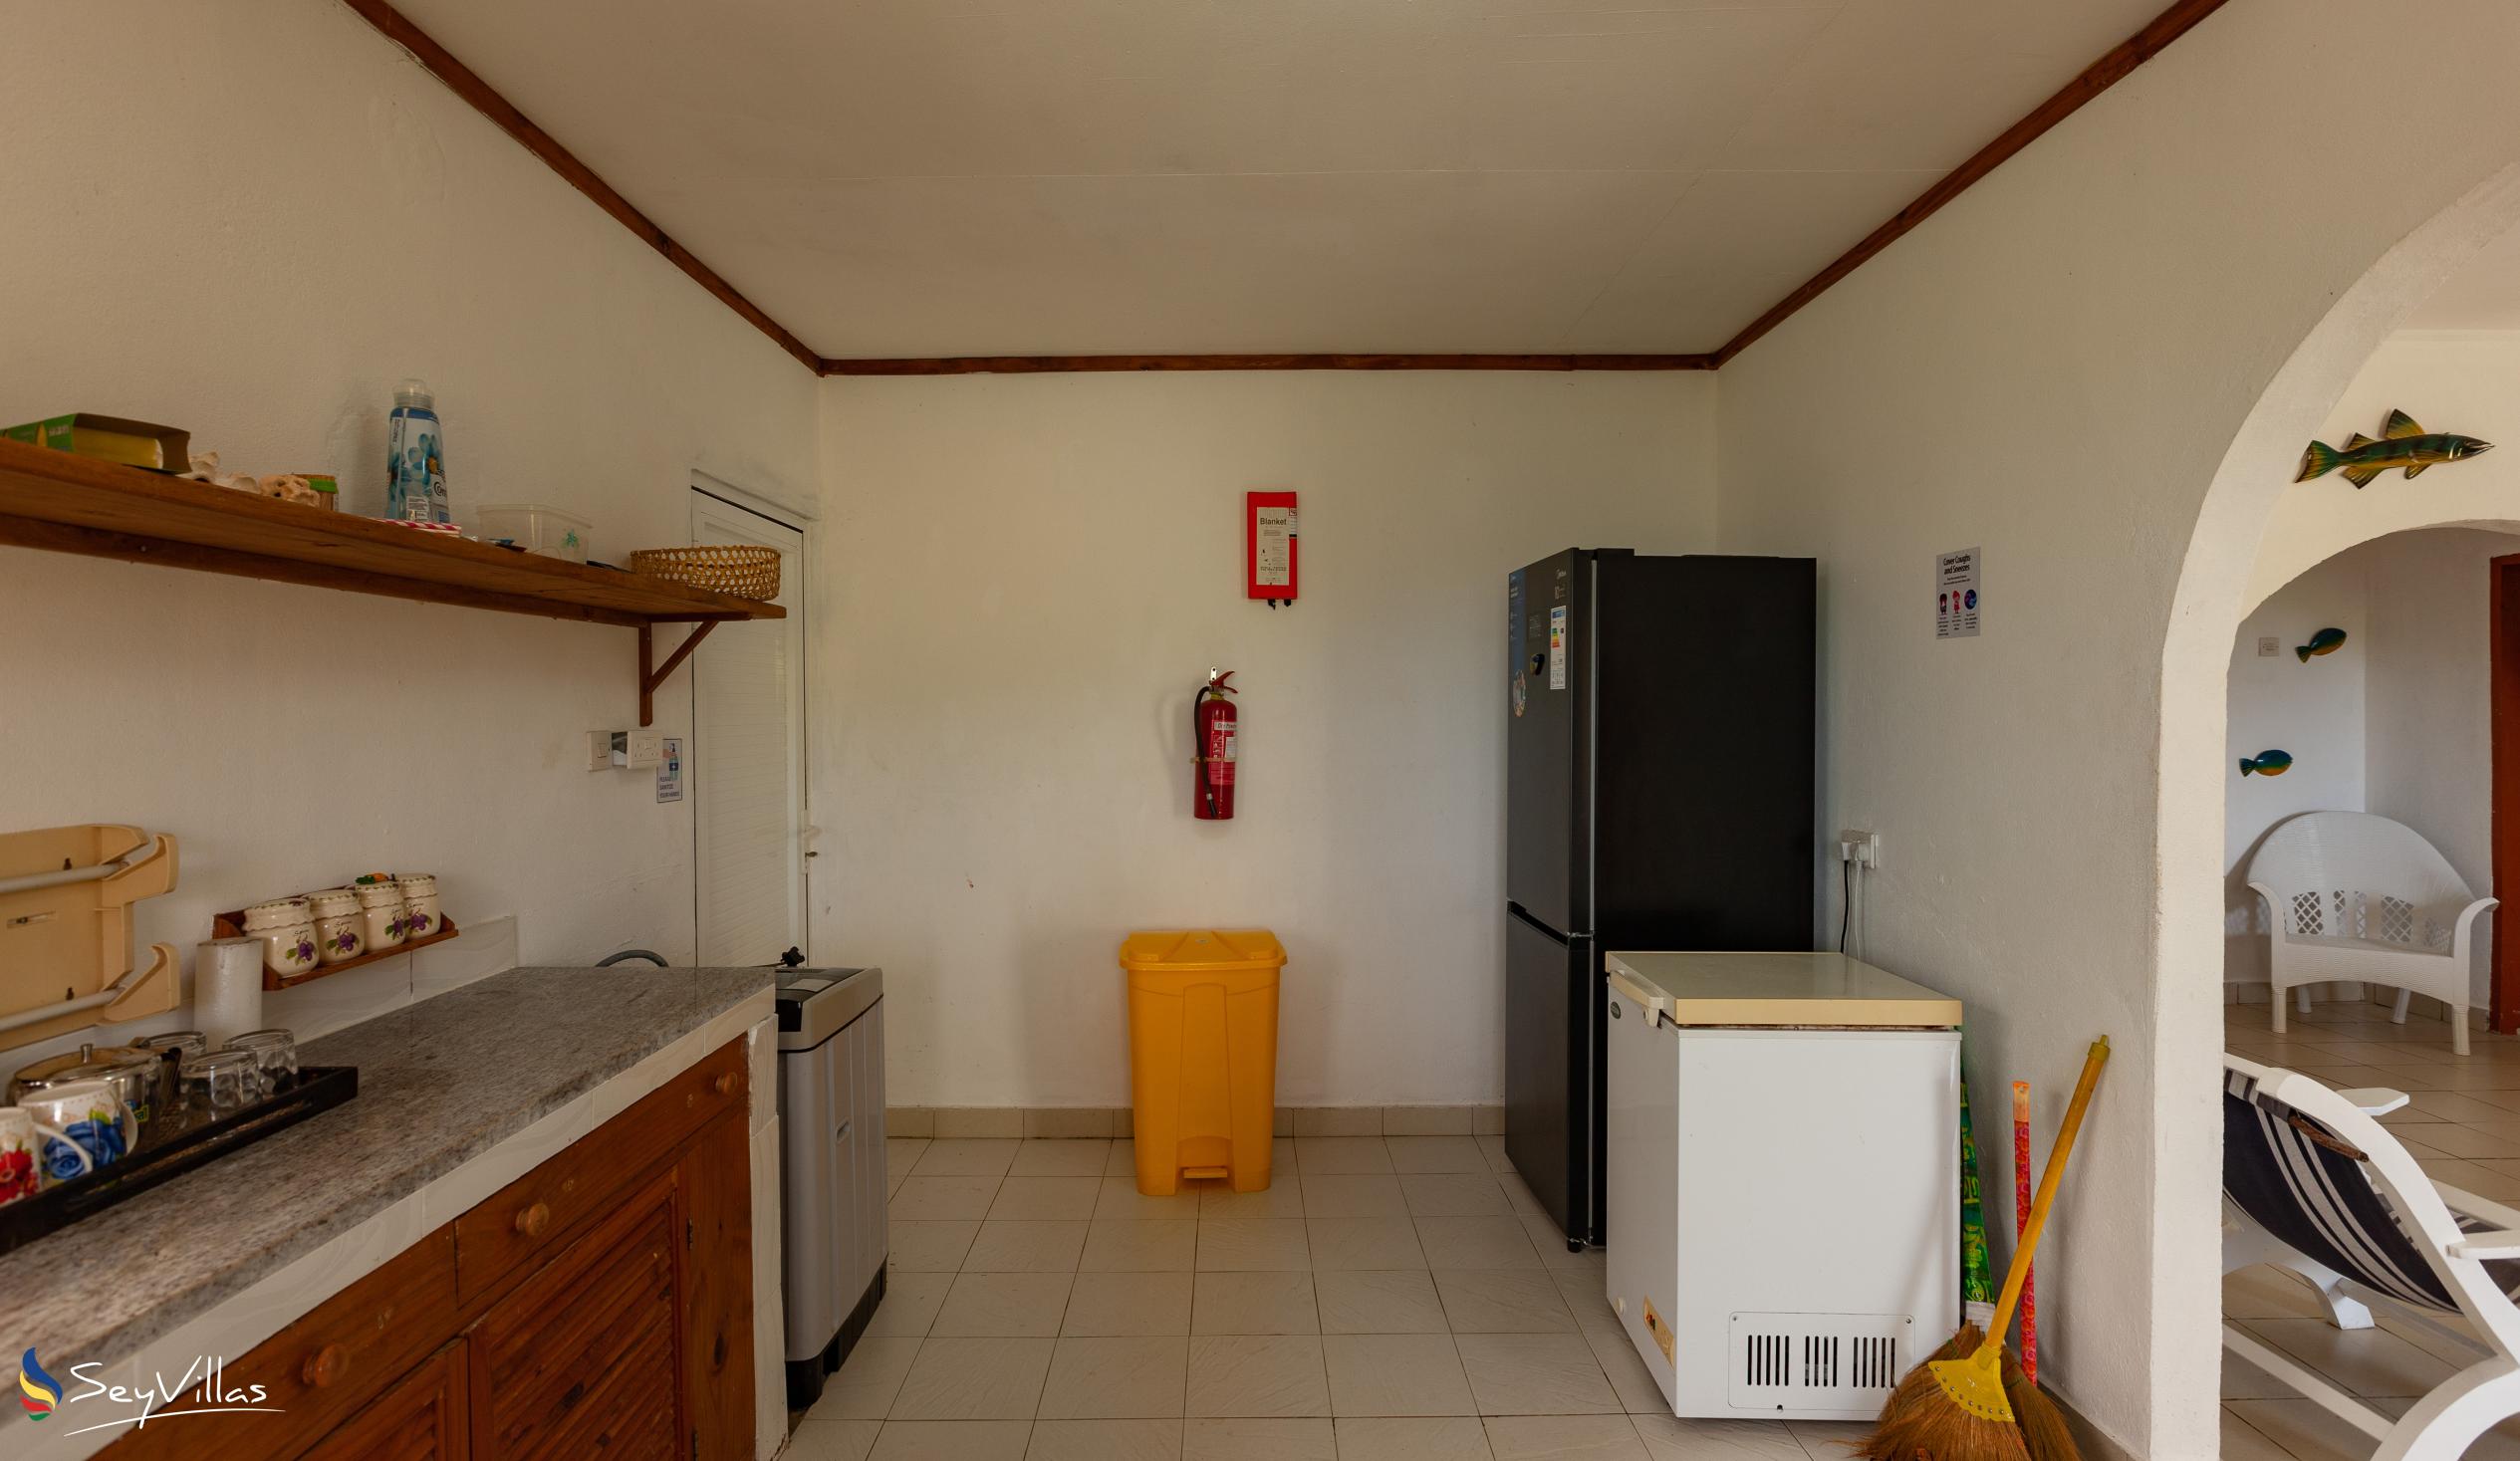 Photo 36: Maison du Soleil - Indoor area - Praslin (Seychelles)